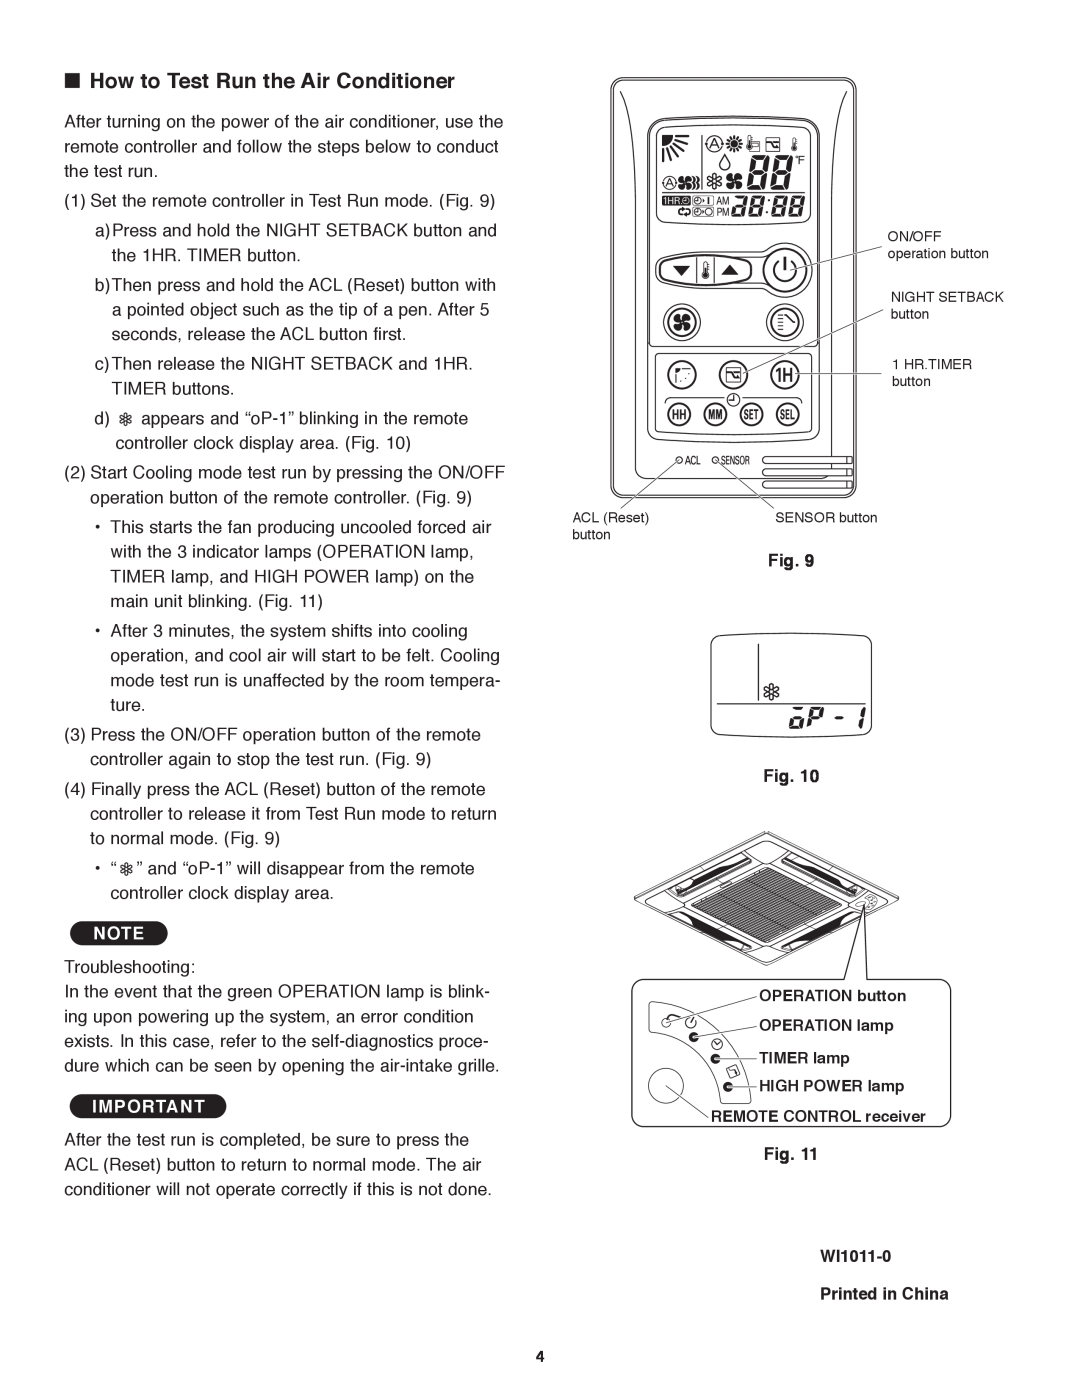 Panasonic CS-MKE9NB4U, CU-4KE31NBU, CU-4KE24NBU How to Test Run the Air Conditioner, Fig. WI1011-0 Printed in China 